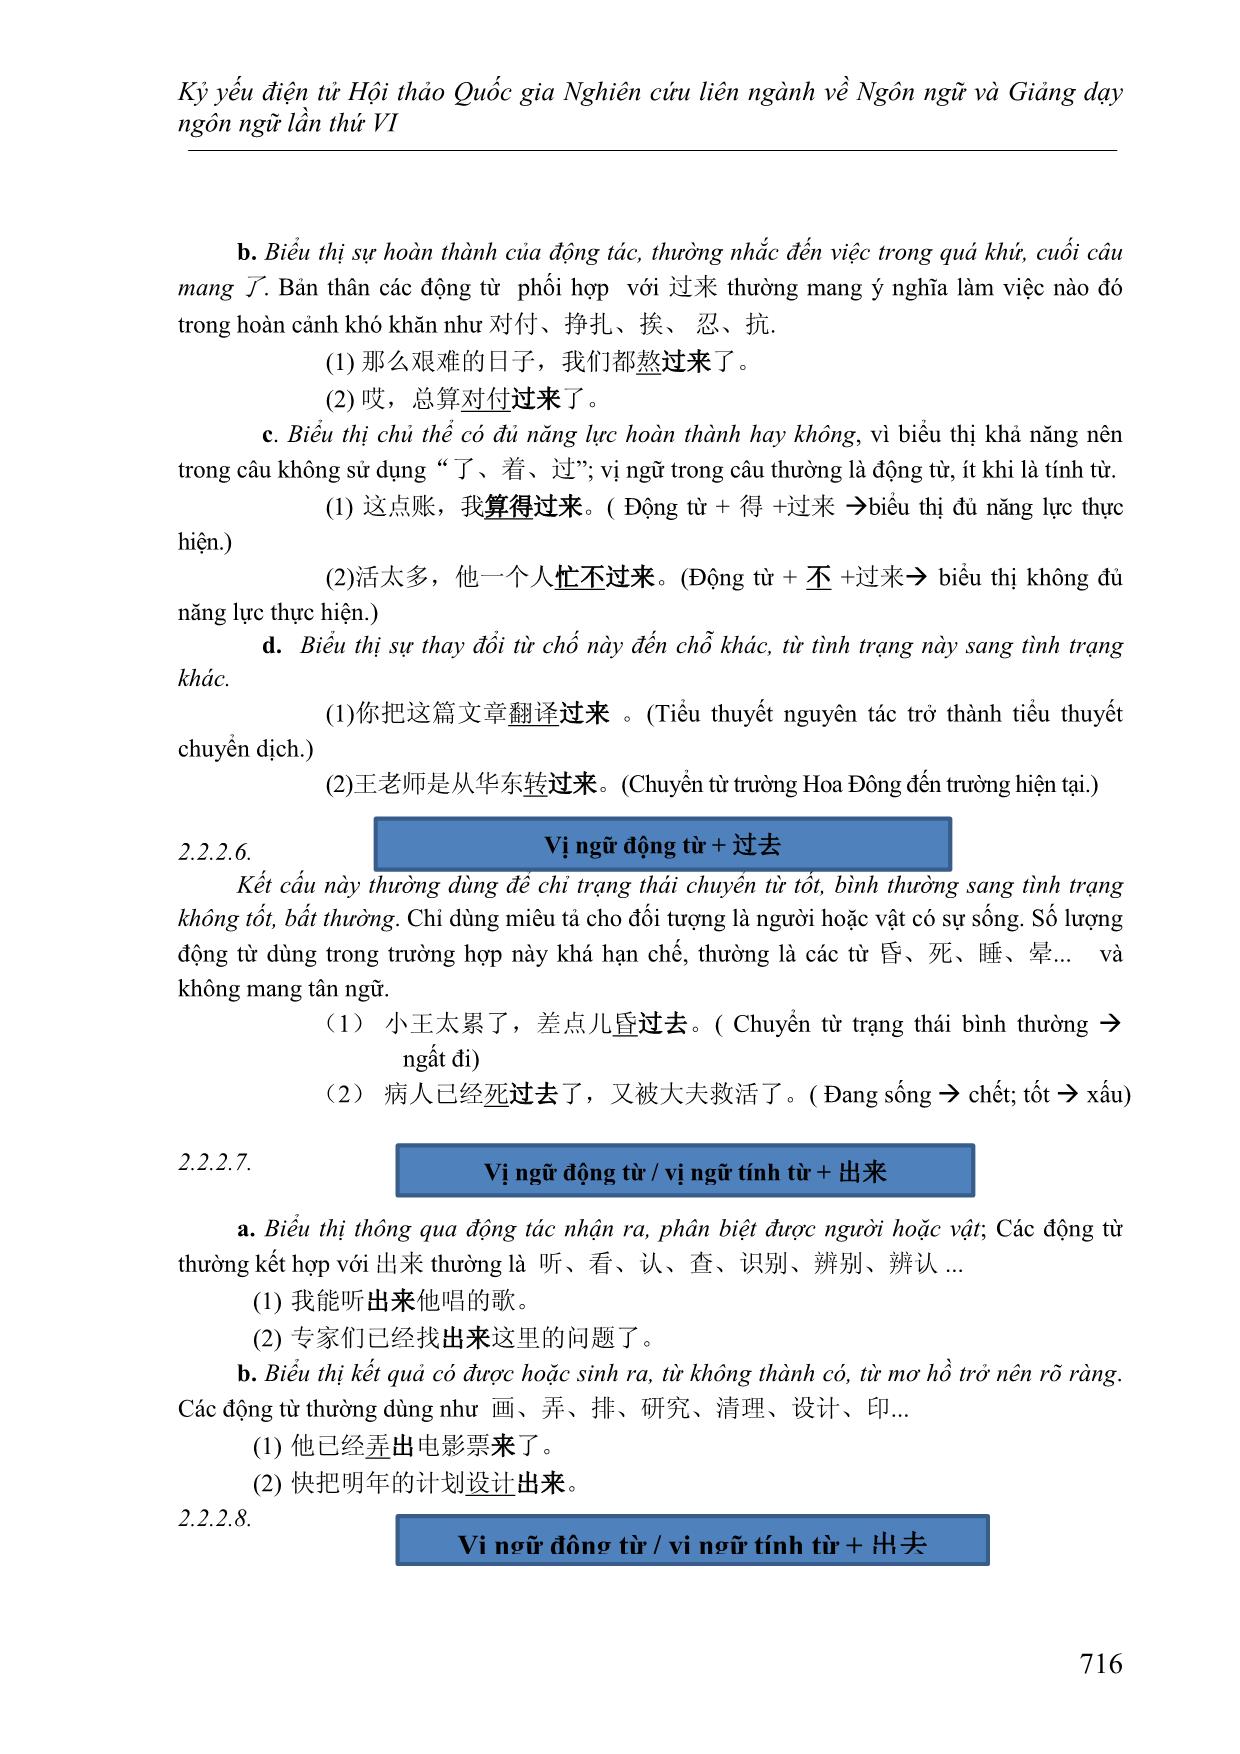 Cách dùng linh hoạt của bổ ngữ xu hướng và cách xác định ý nghĩa của câu khi sử dụng bổ ngữ xu hướng kép 上来, 上去, 下来,下 trang 6